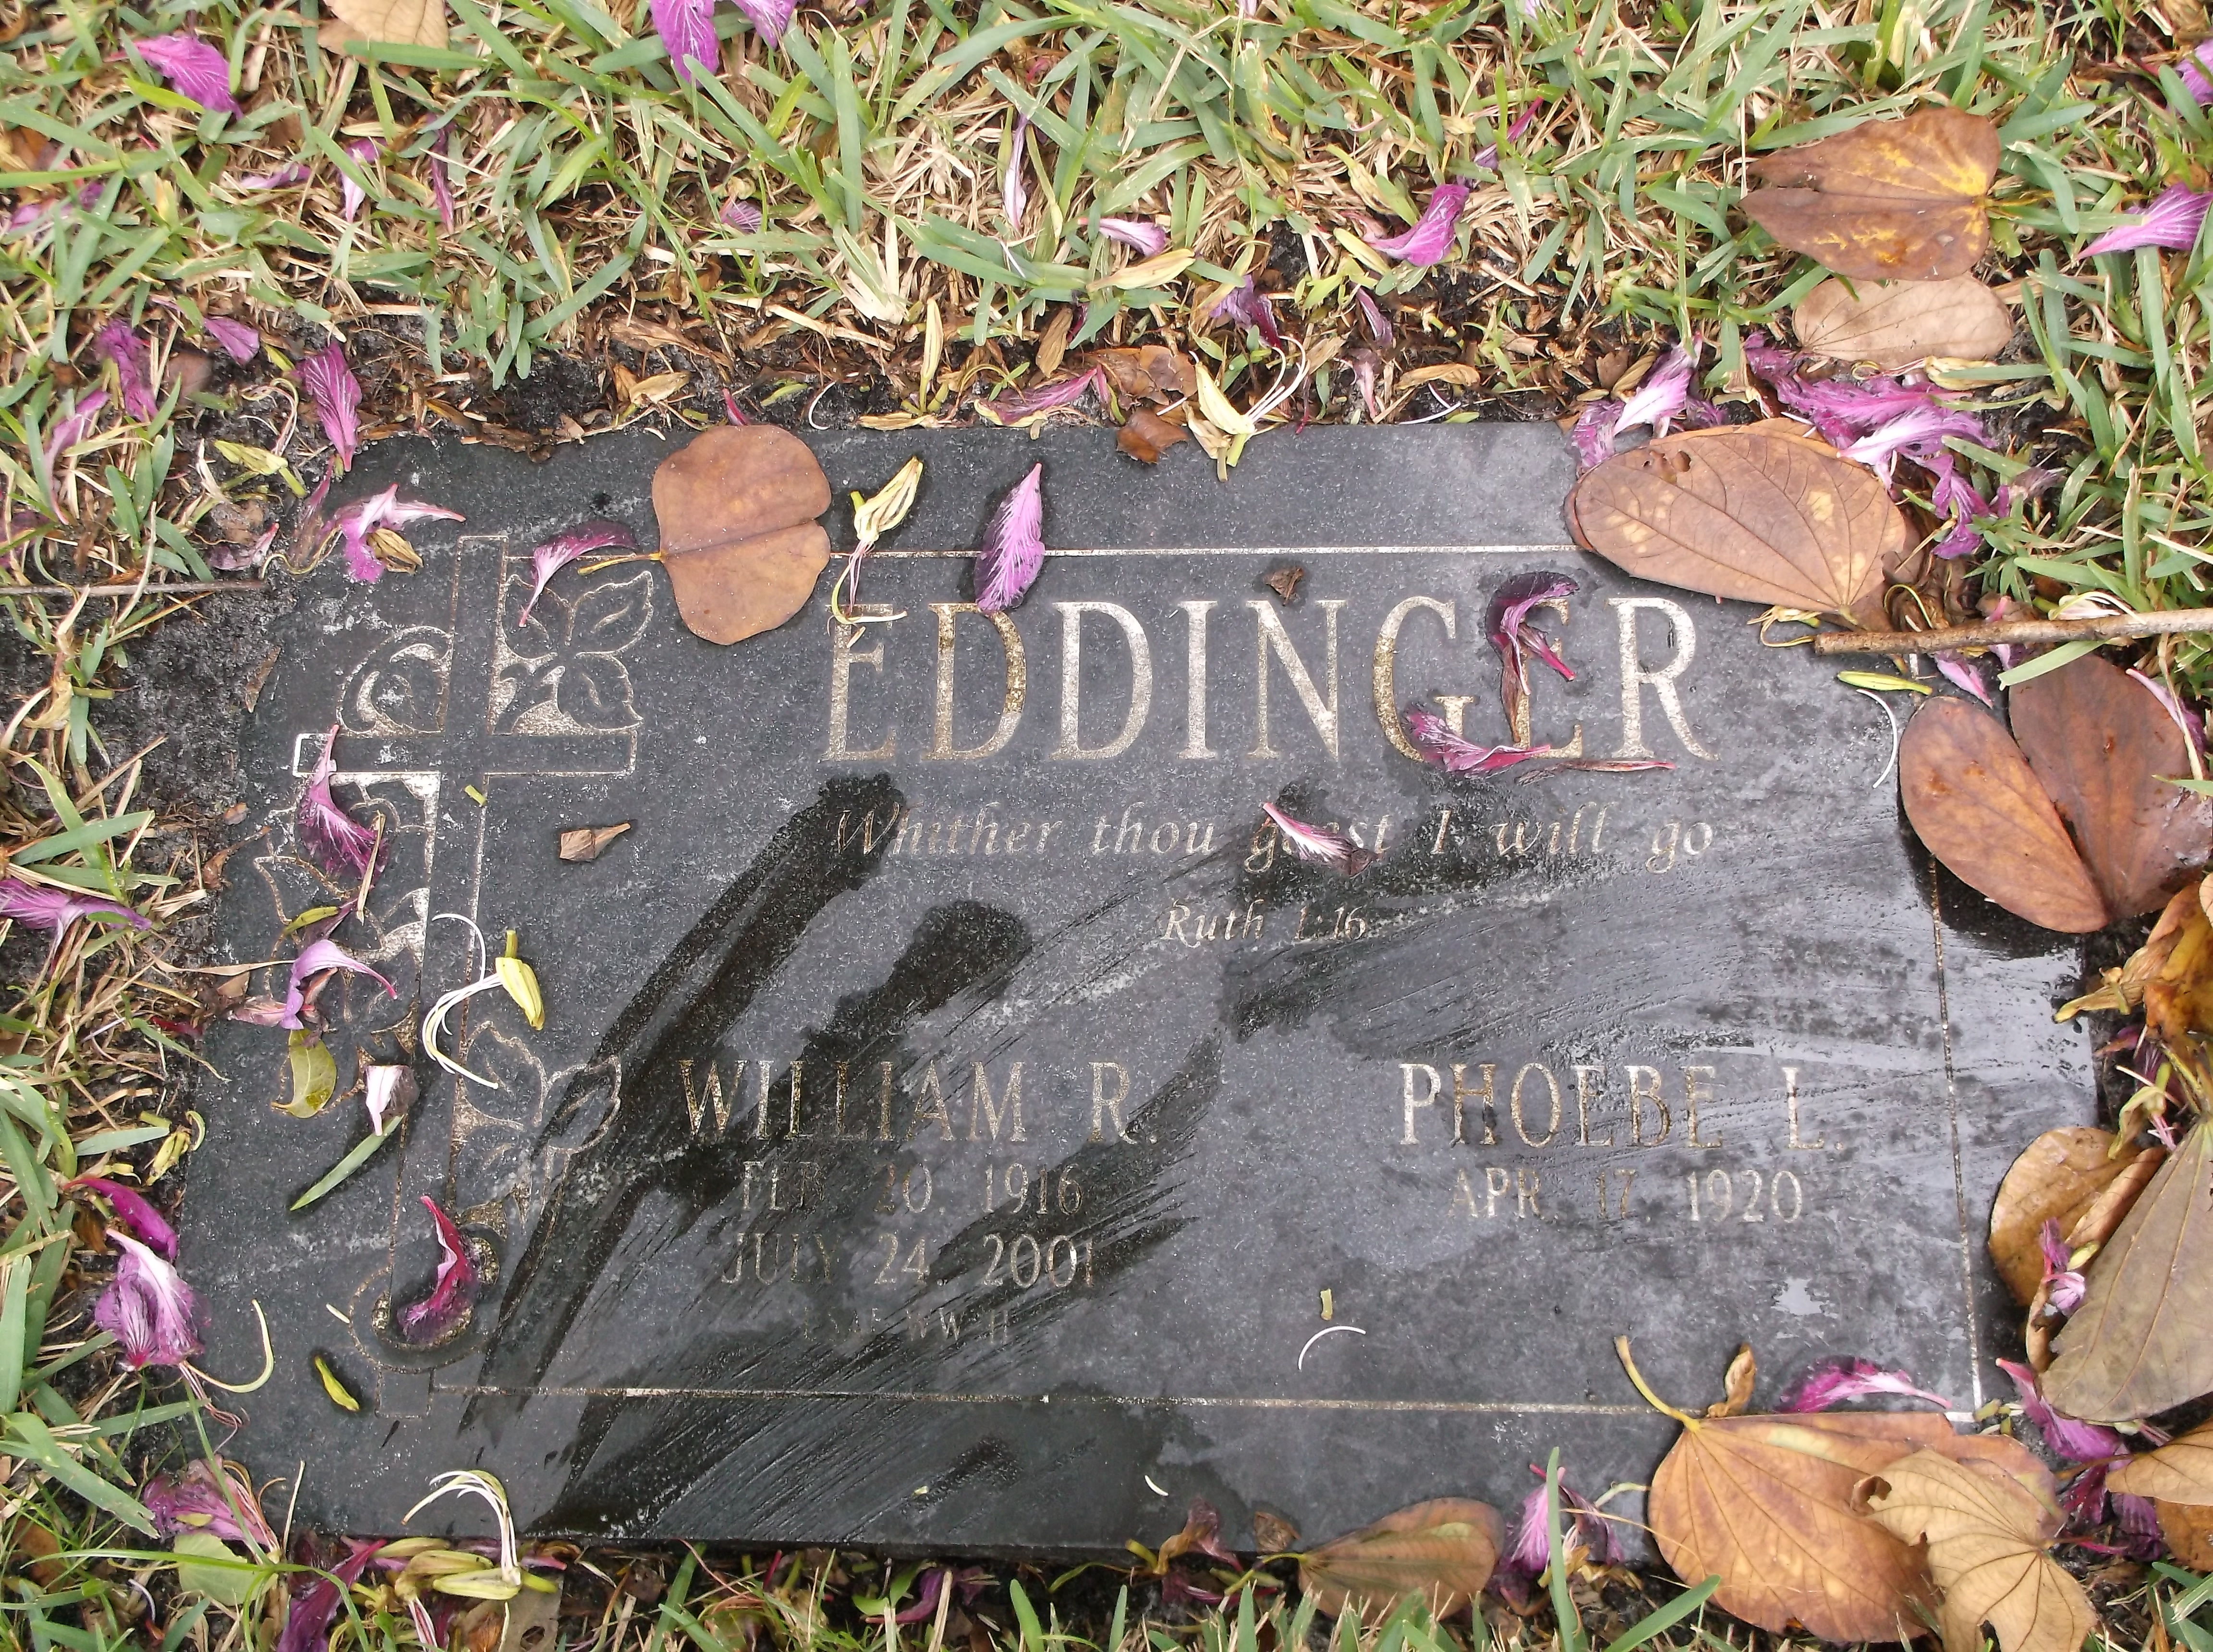 William R Eddinger